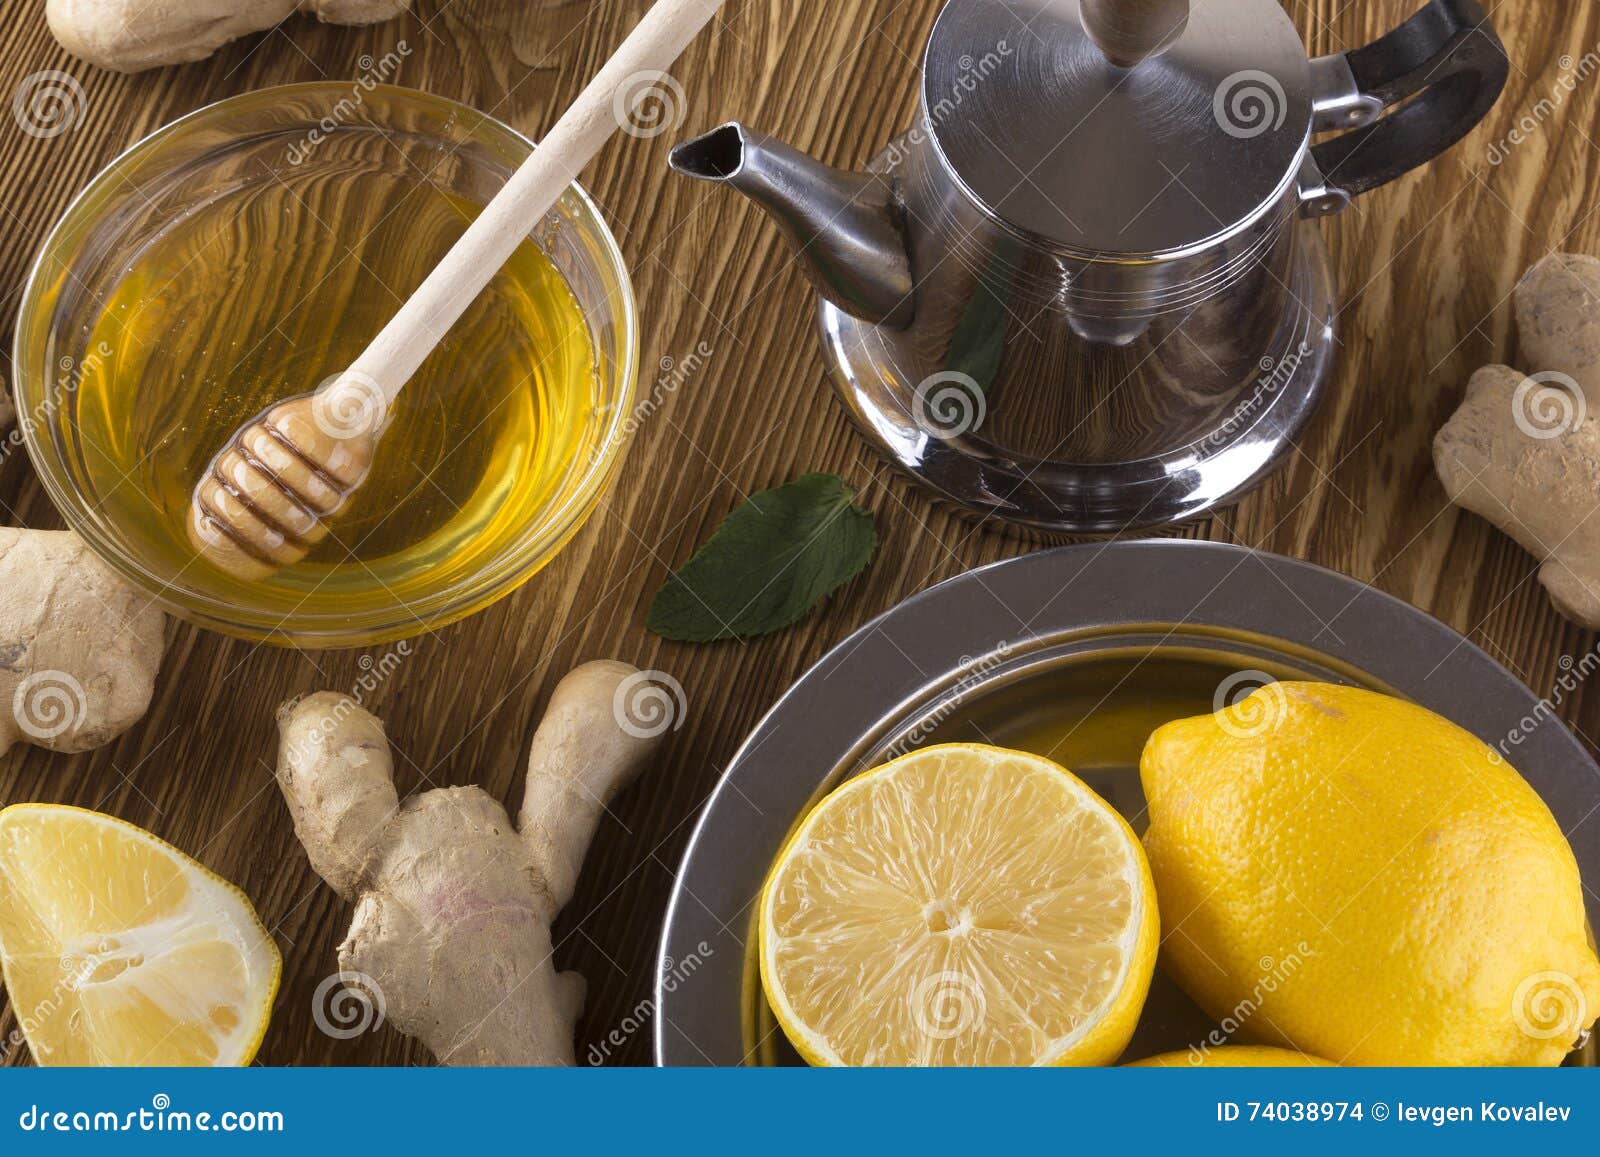 Teekanne Ingwertee Mit Honig Und Zitrone Stockfoto - Bild von medizin ...